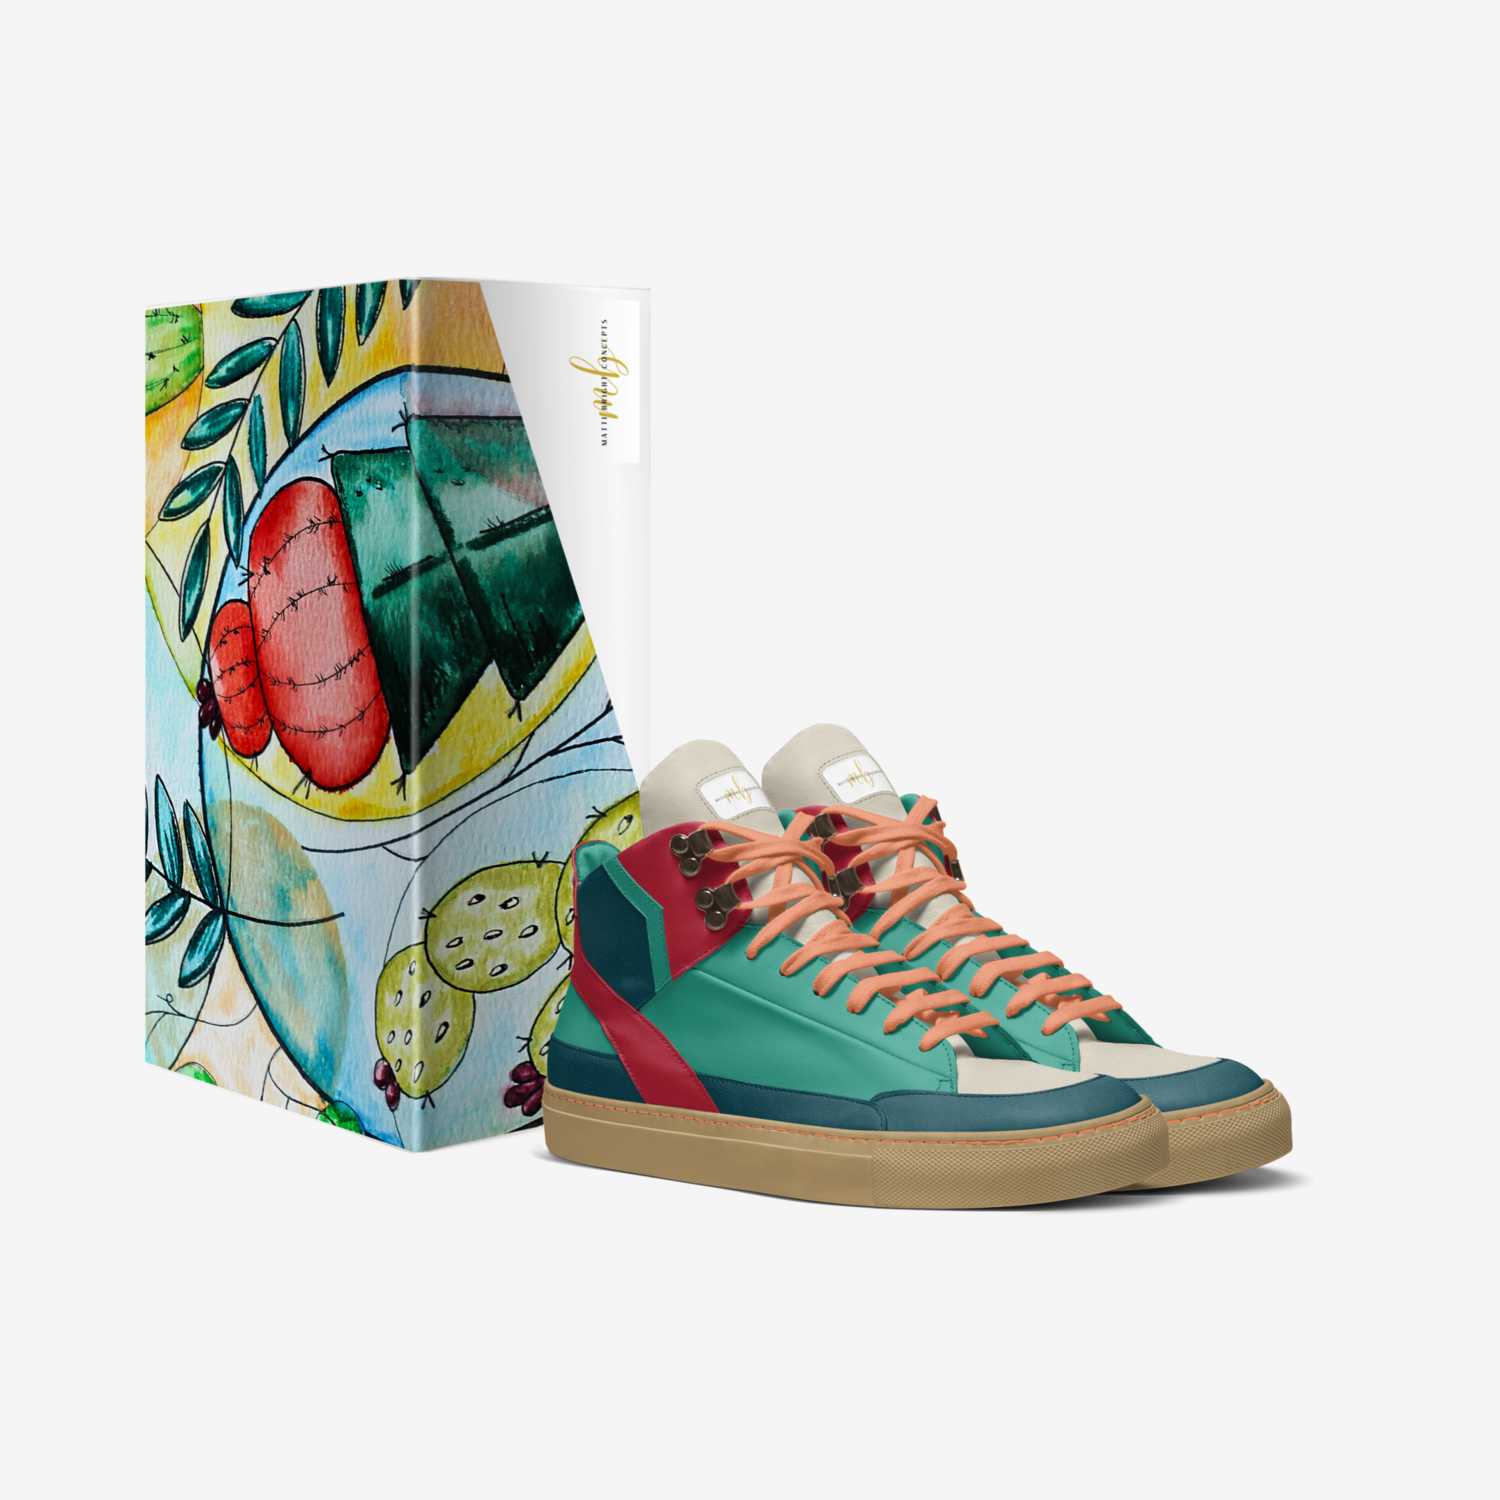 Matti Bright|Wild1 custom made in Italy shoes by Heather Mattioni | Matti Bright | Box view